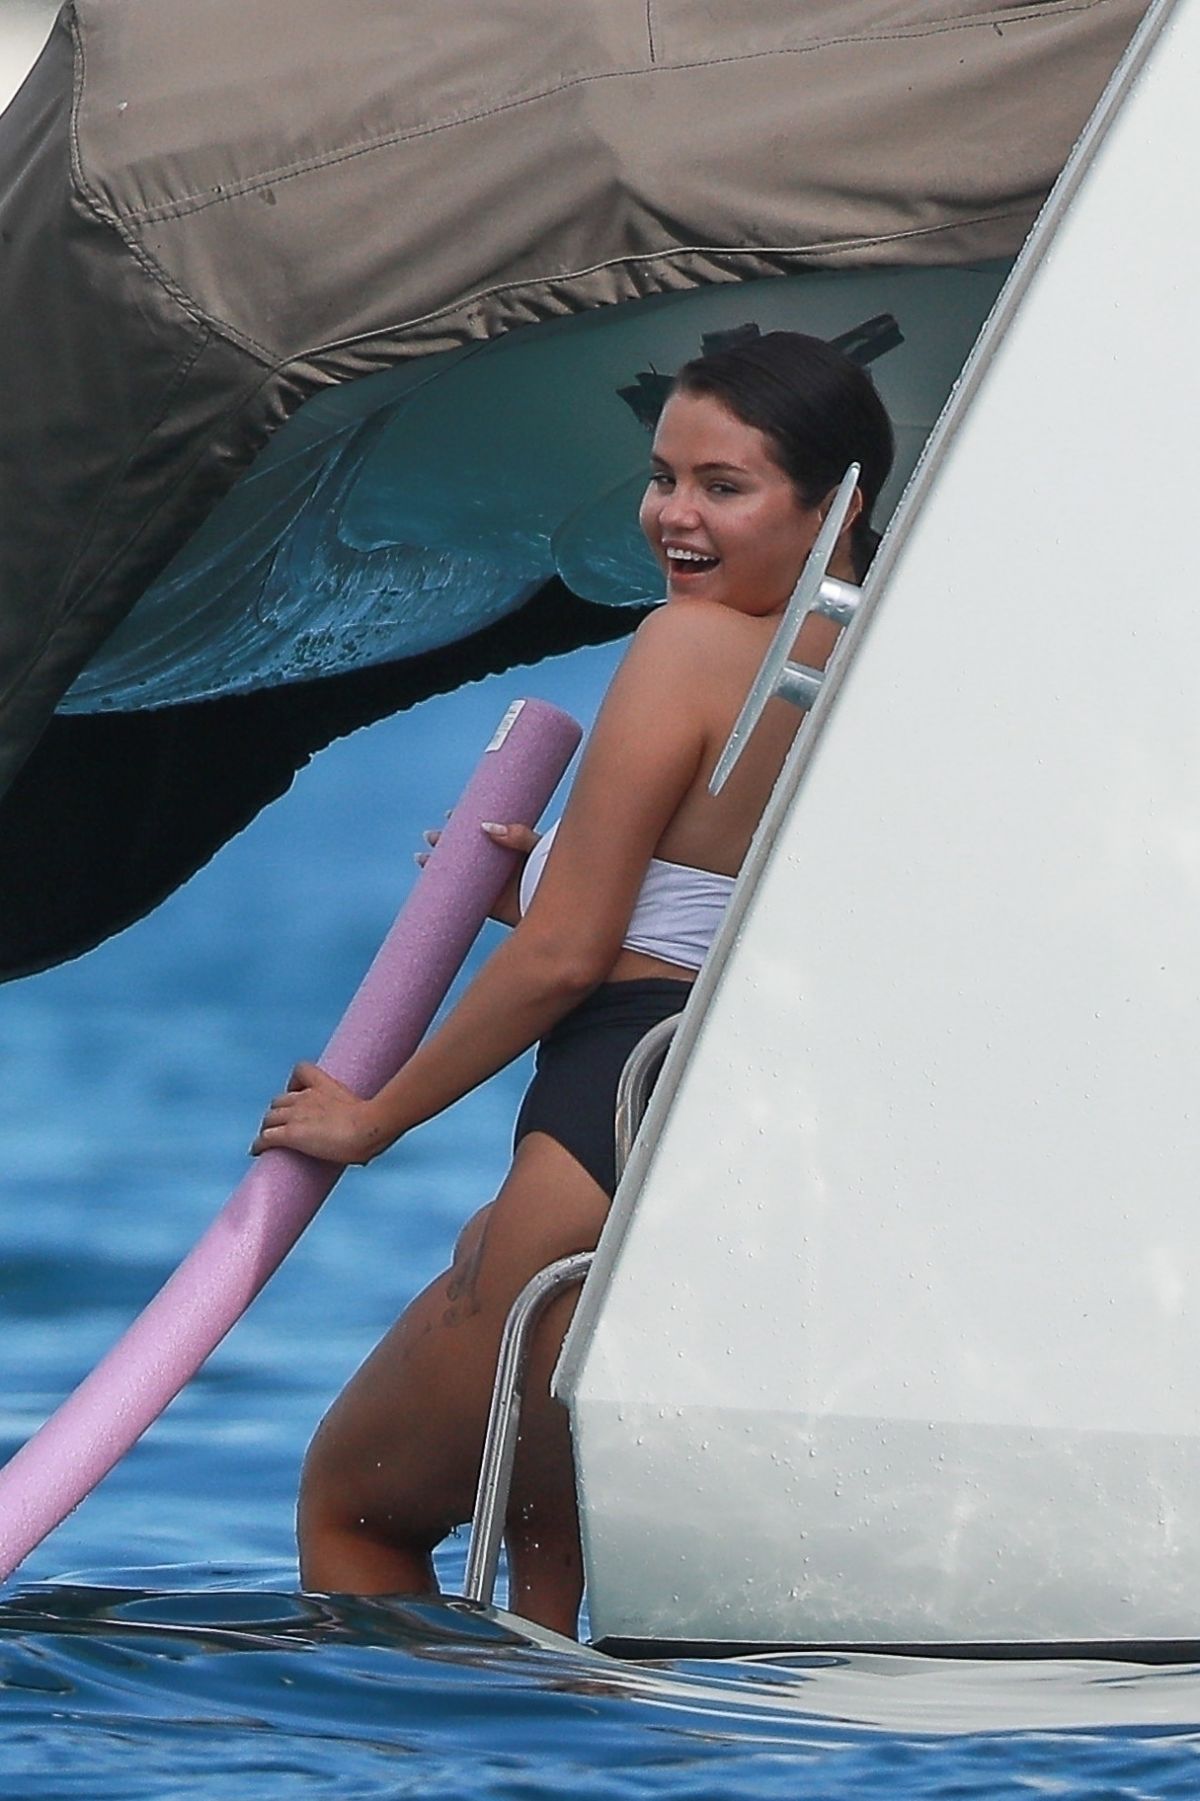 SELENA GOMEZ in Bikini on Vacation in Cabo San Lucas 01/01/2023